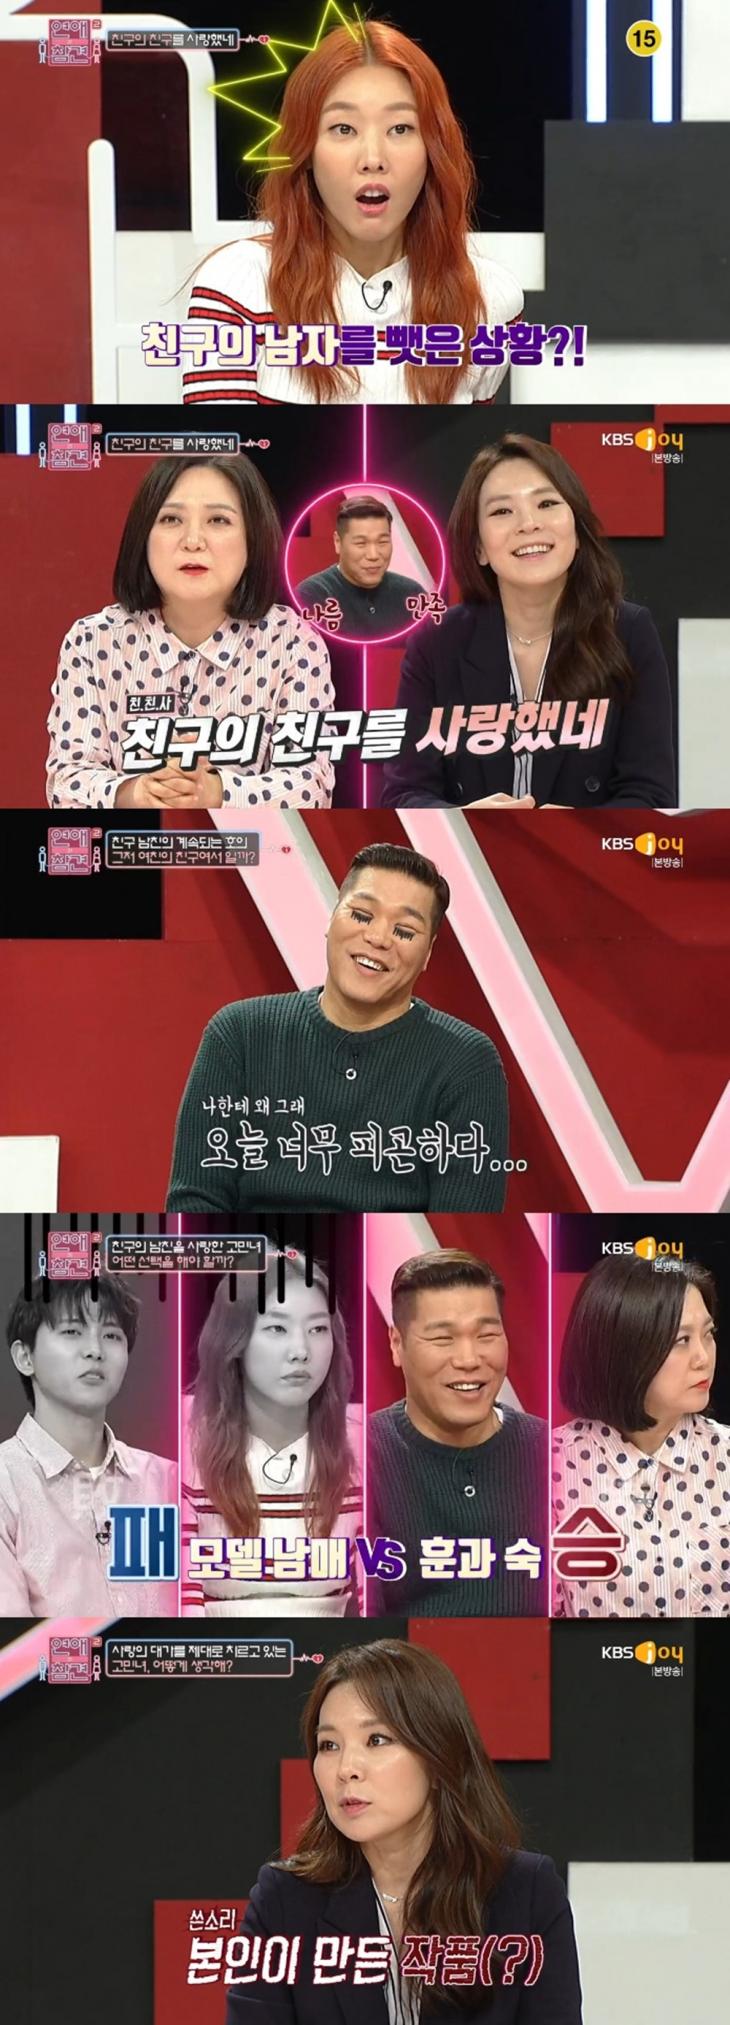 KBS 조이 ‘연애의 참견 시즌2’ 방송 캡처